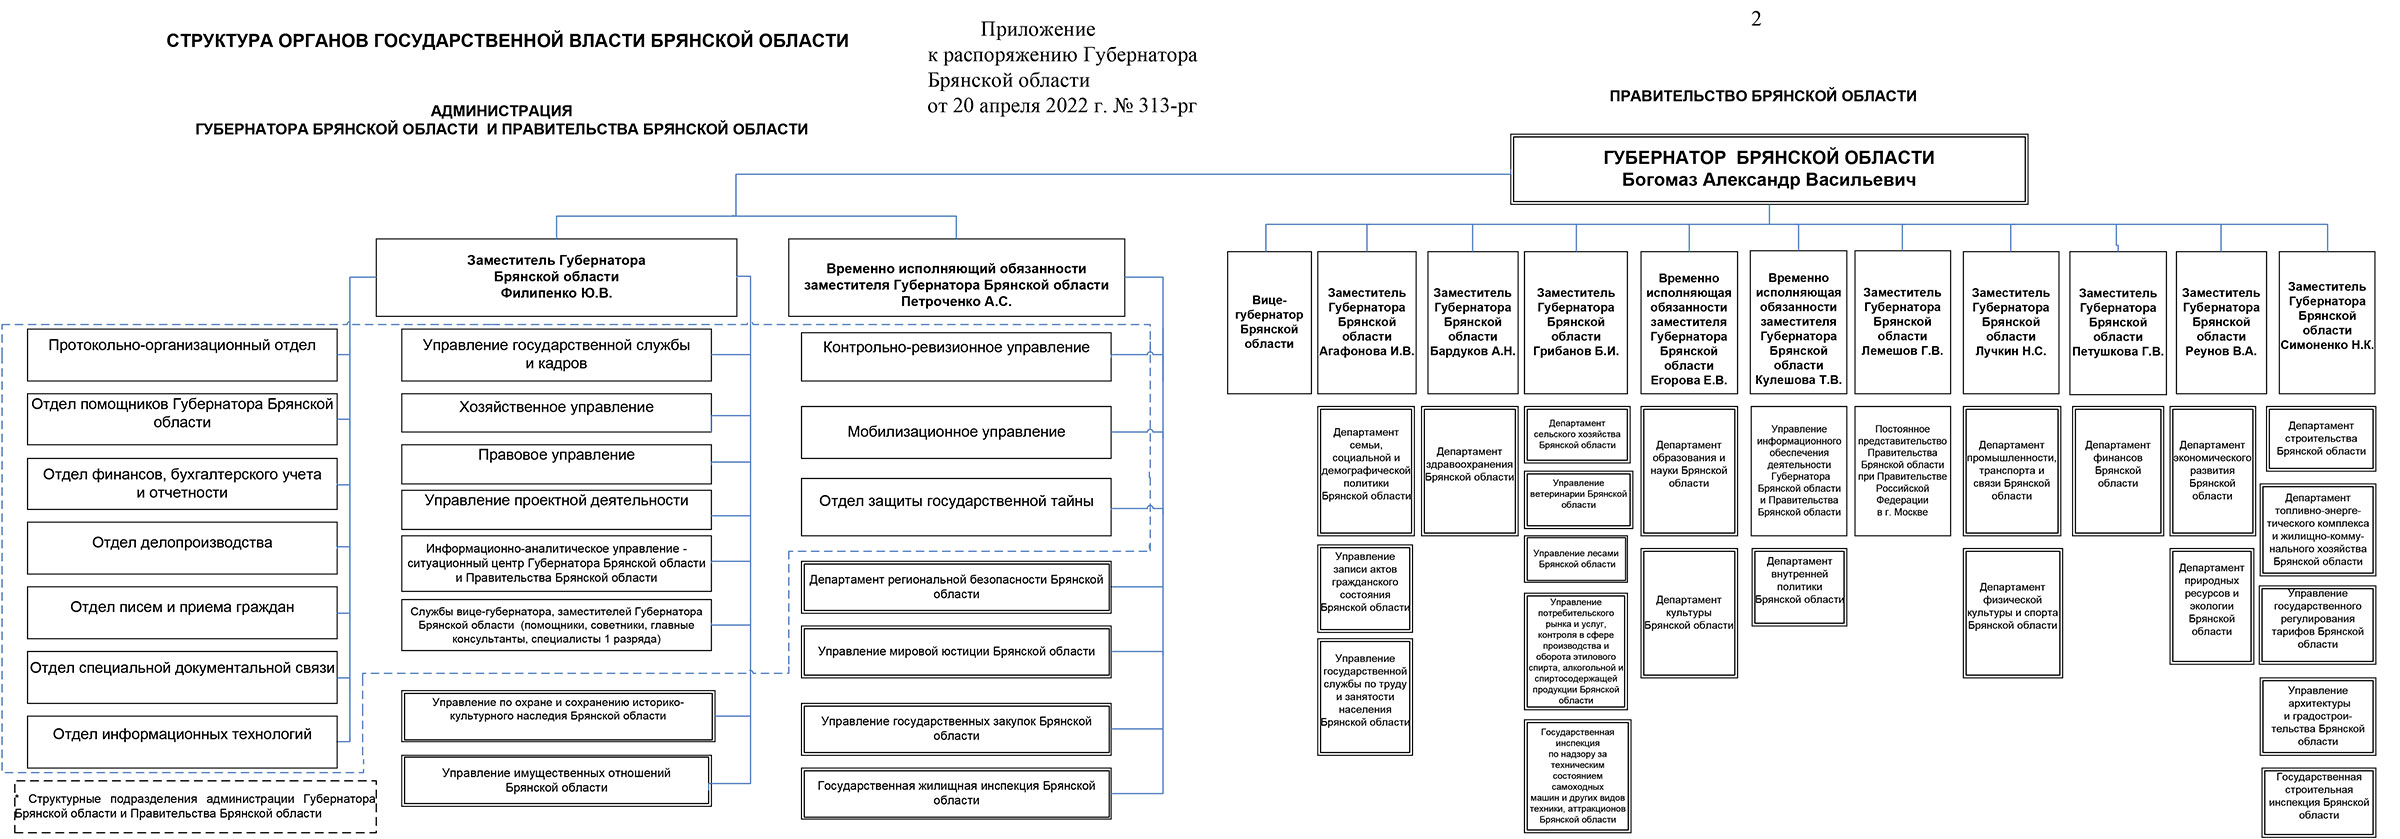 Структура органов Государственной власти Брянской области